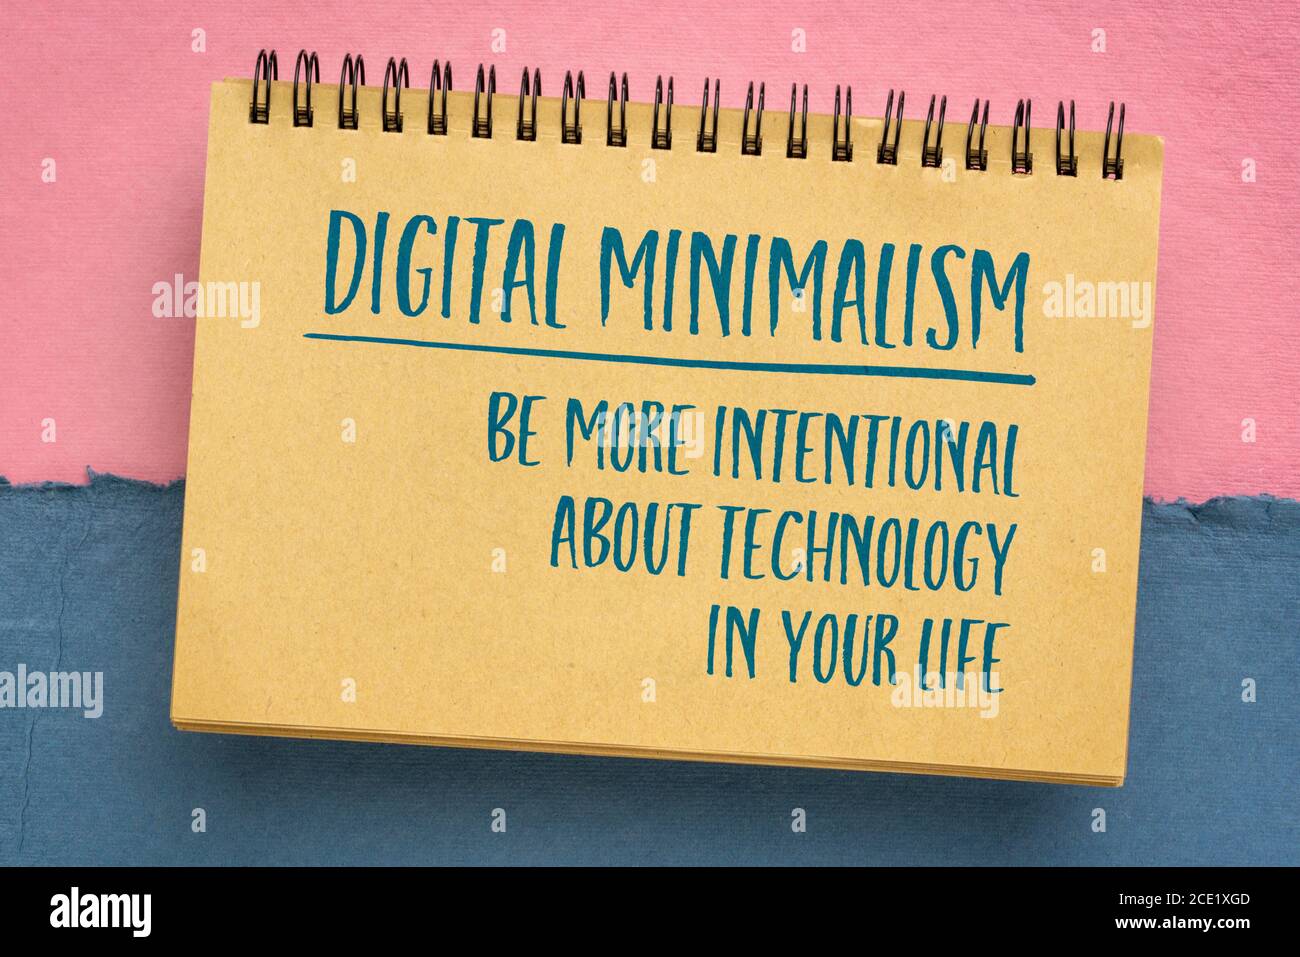 concept de minimalisme numérique - être plus intentionnel avec la technologie dans votre vie , écriture dans un carnet de croquis sur papier chiffon pastel fait à la main Banque D'Images